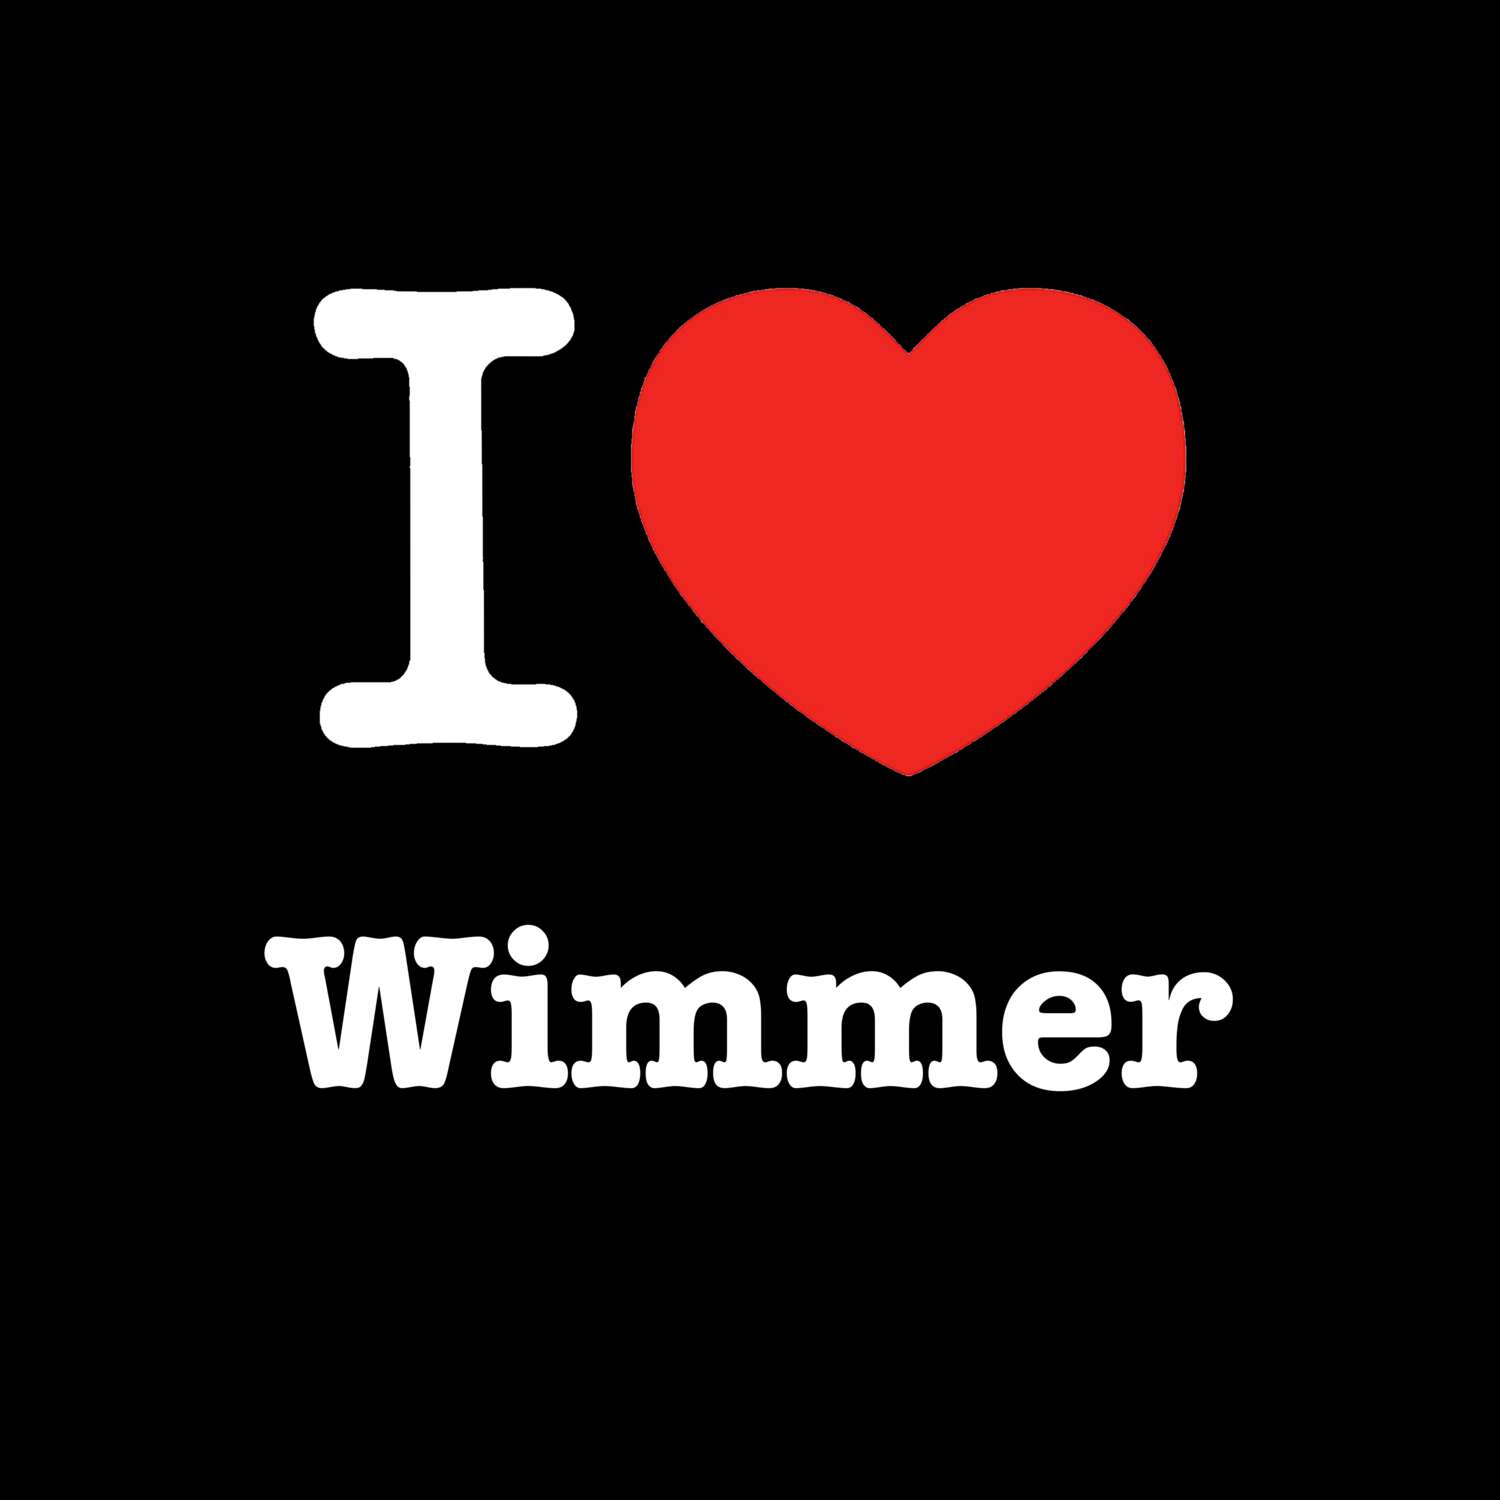 Wimmer T-Shirt »I love«